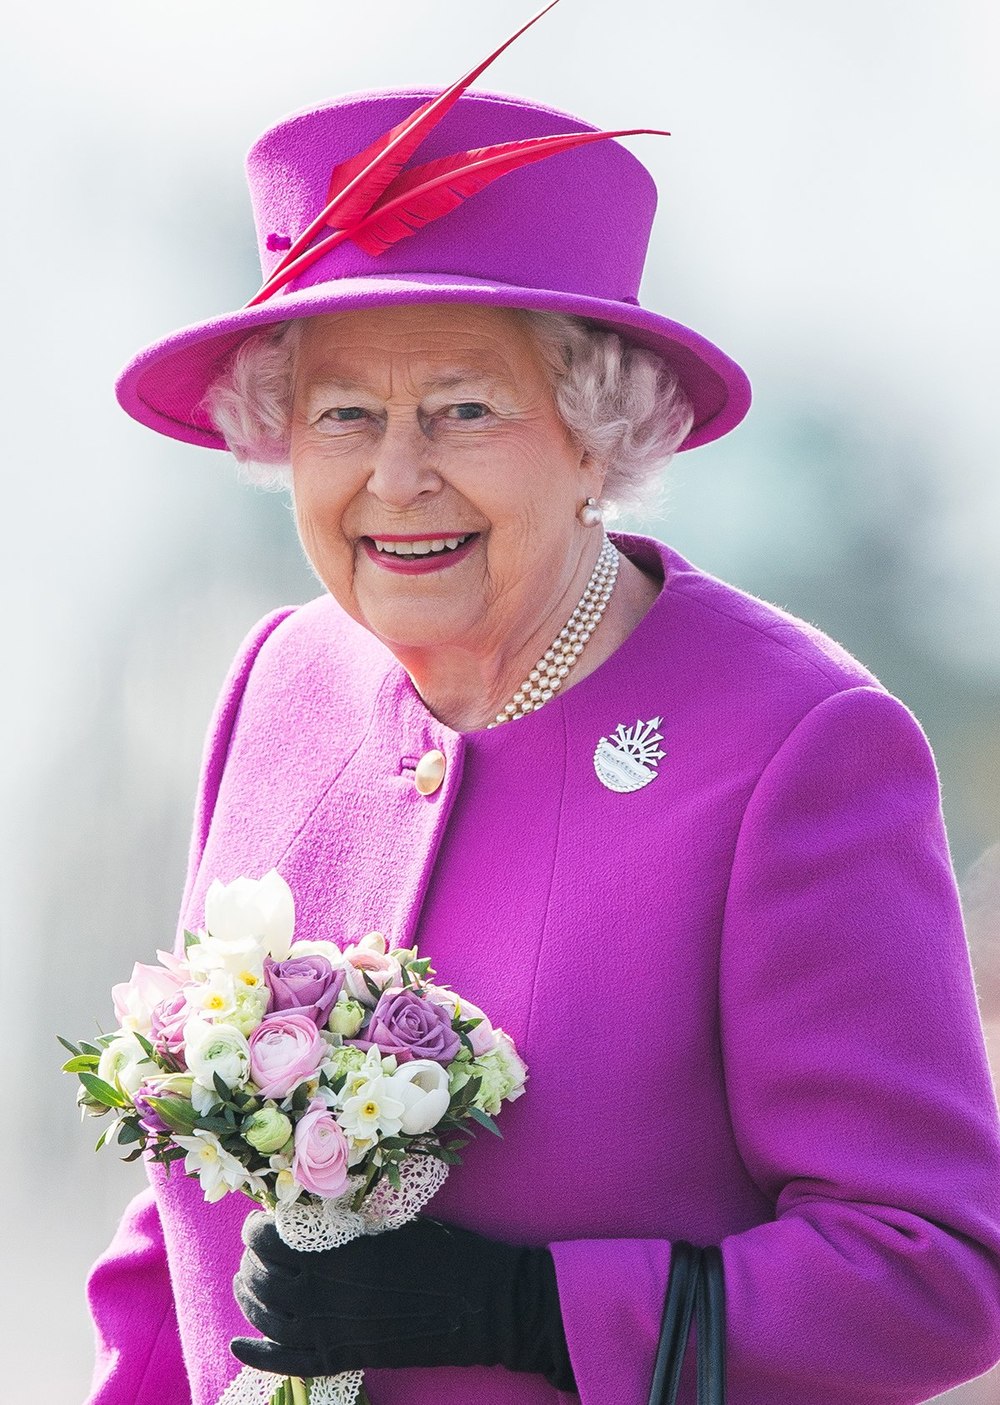 Nữ hoàng Elizabeth II vẫn sở hữu nét đẹp quý phái dù tuổi đã ngoài 90. (Ảnh: AFP)